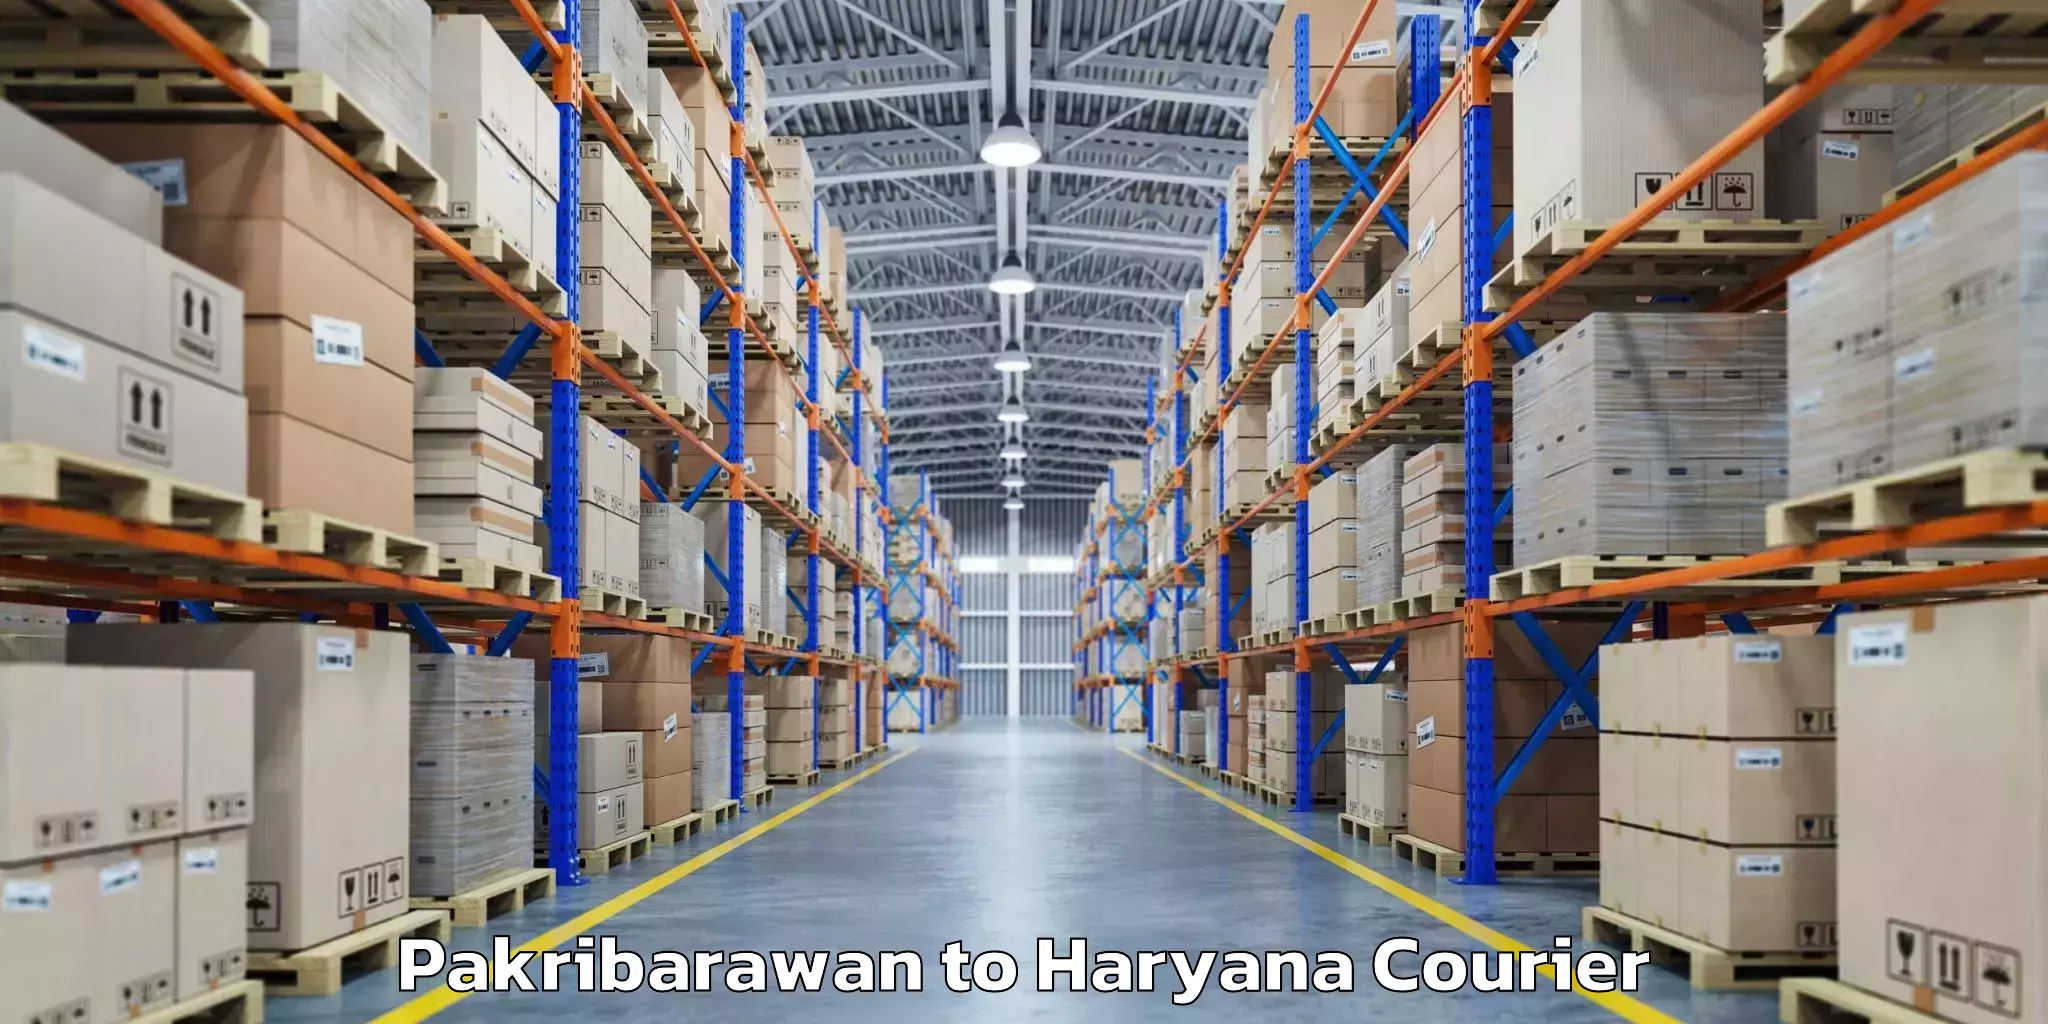 Baggage shipping service Pakribarawan to Haryana